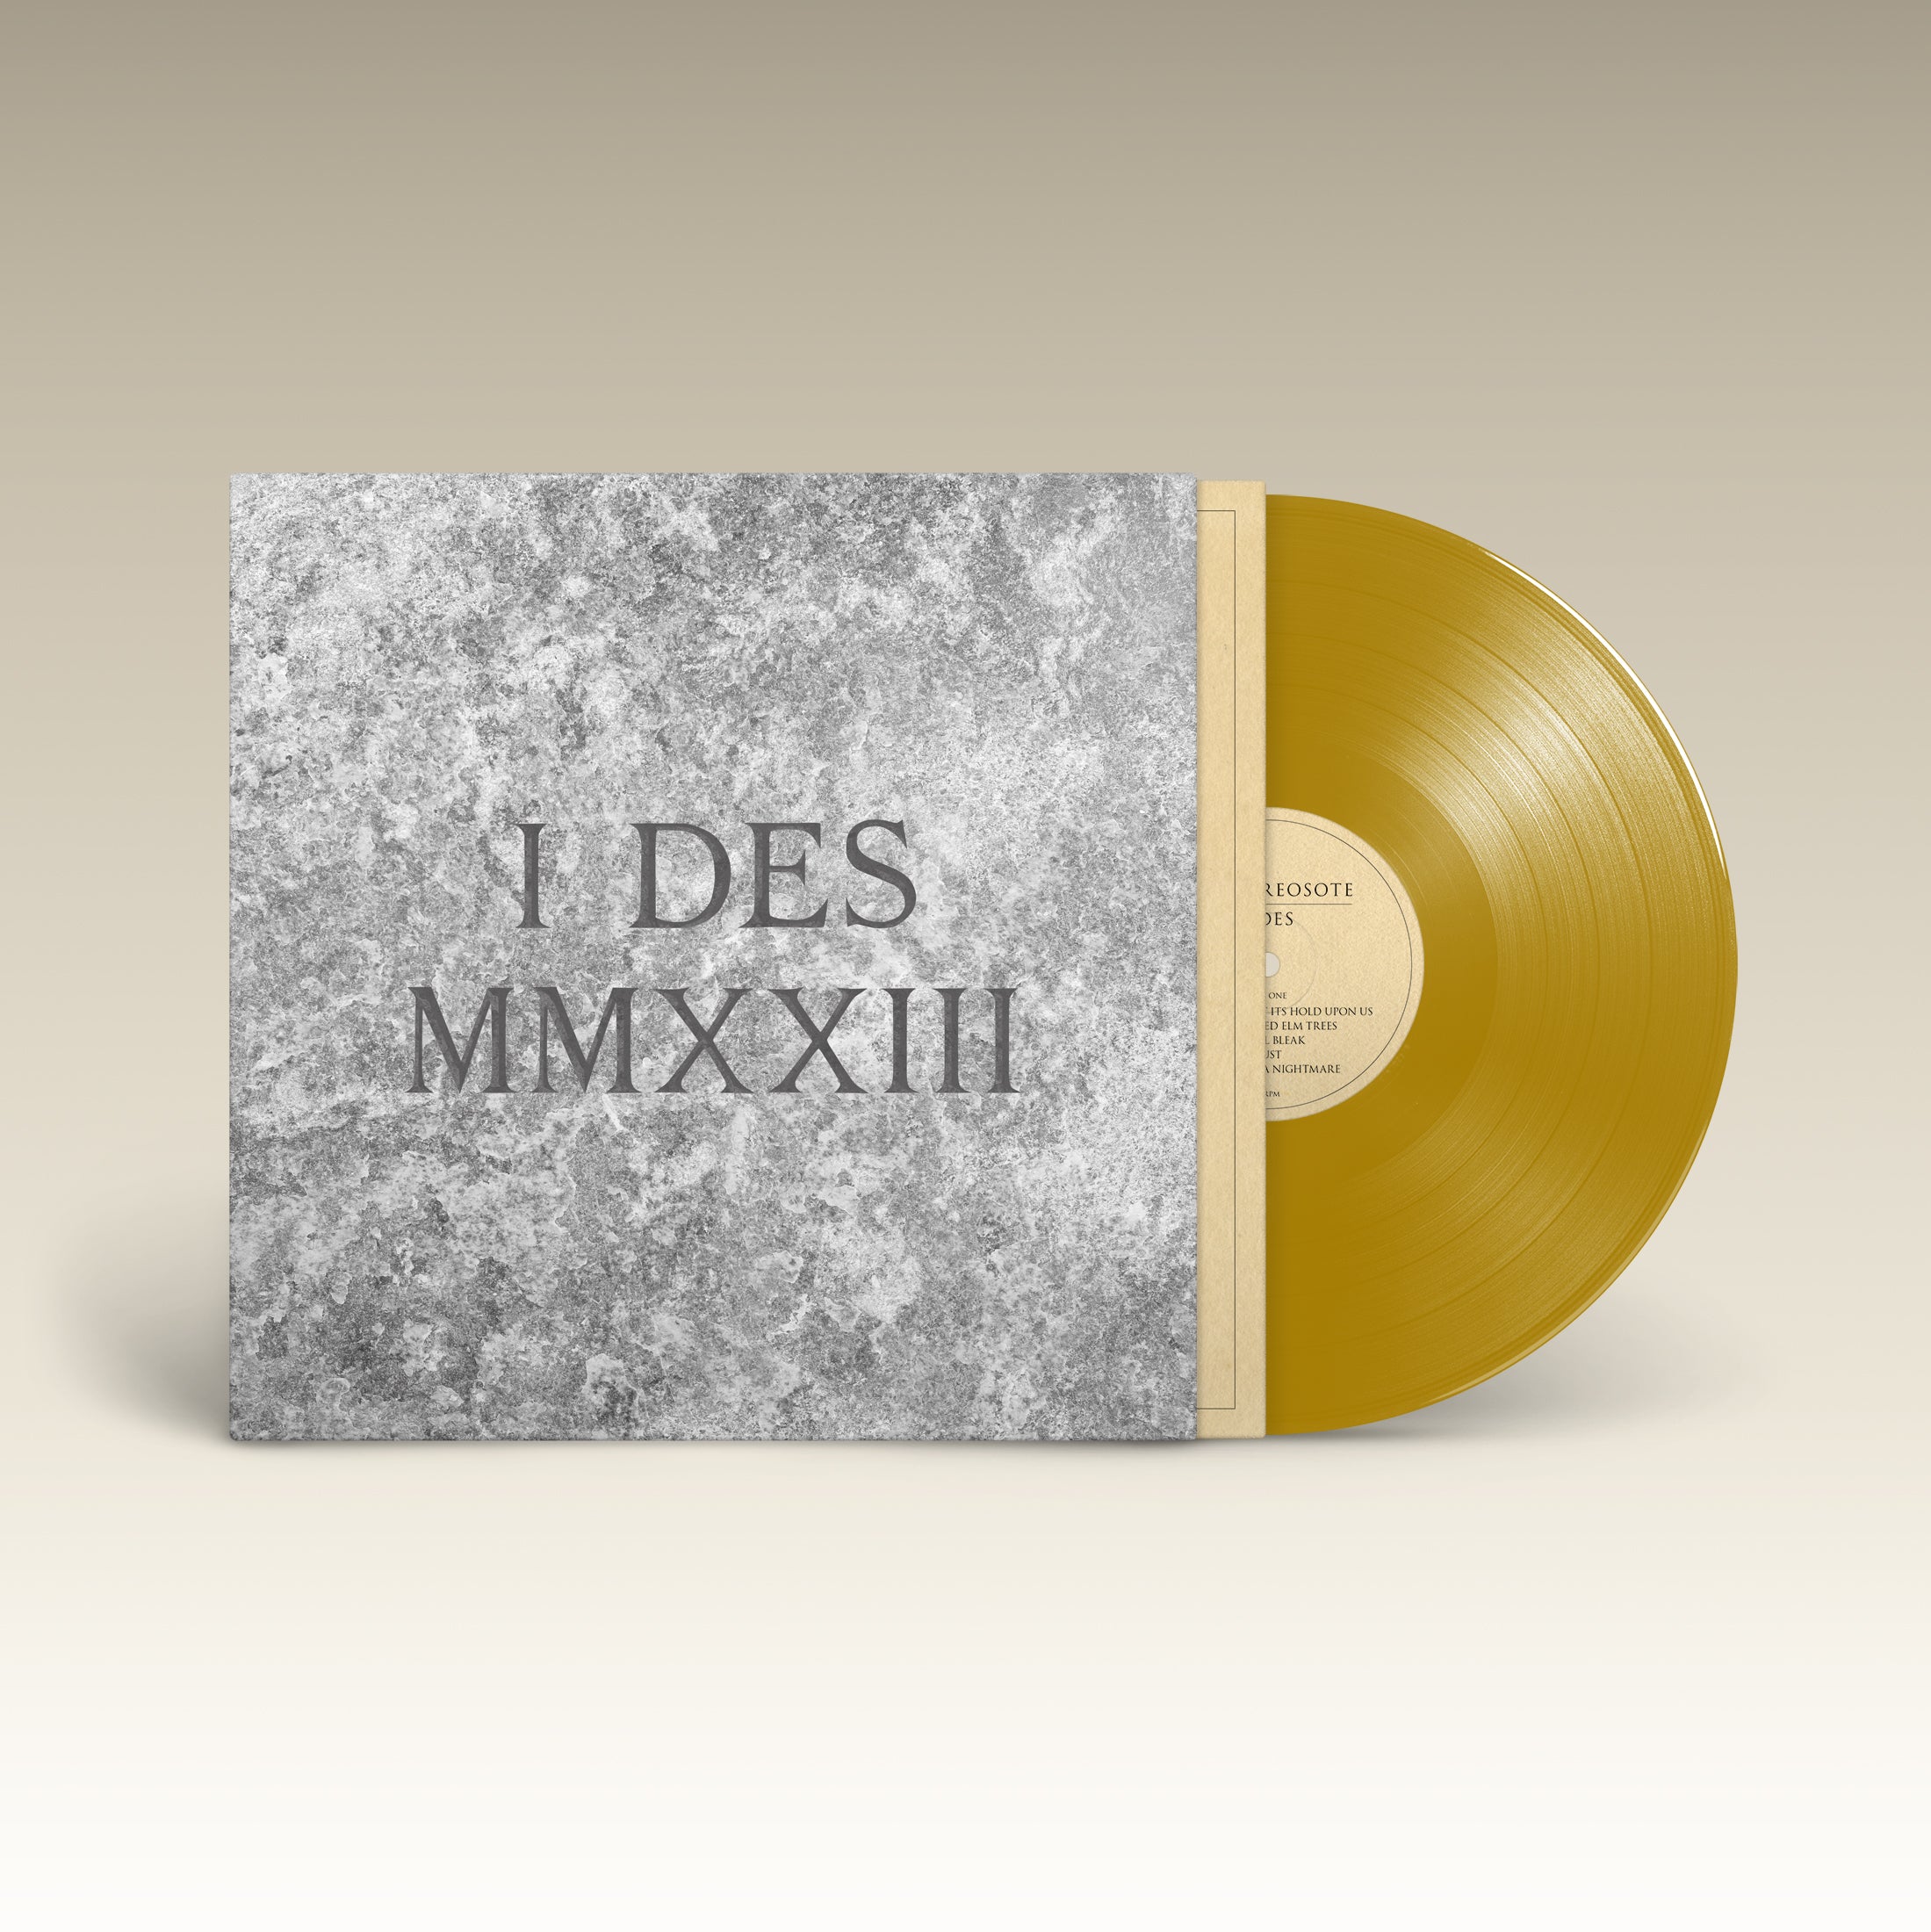 King Creosote - I DES: Limited Gold Vinyl LP